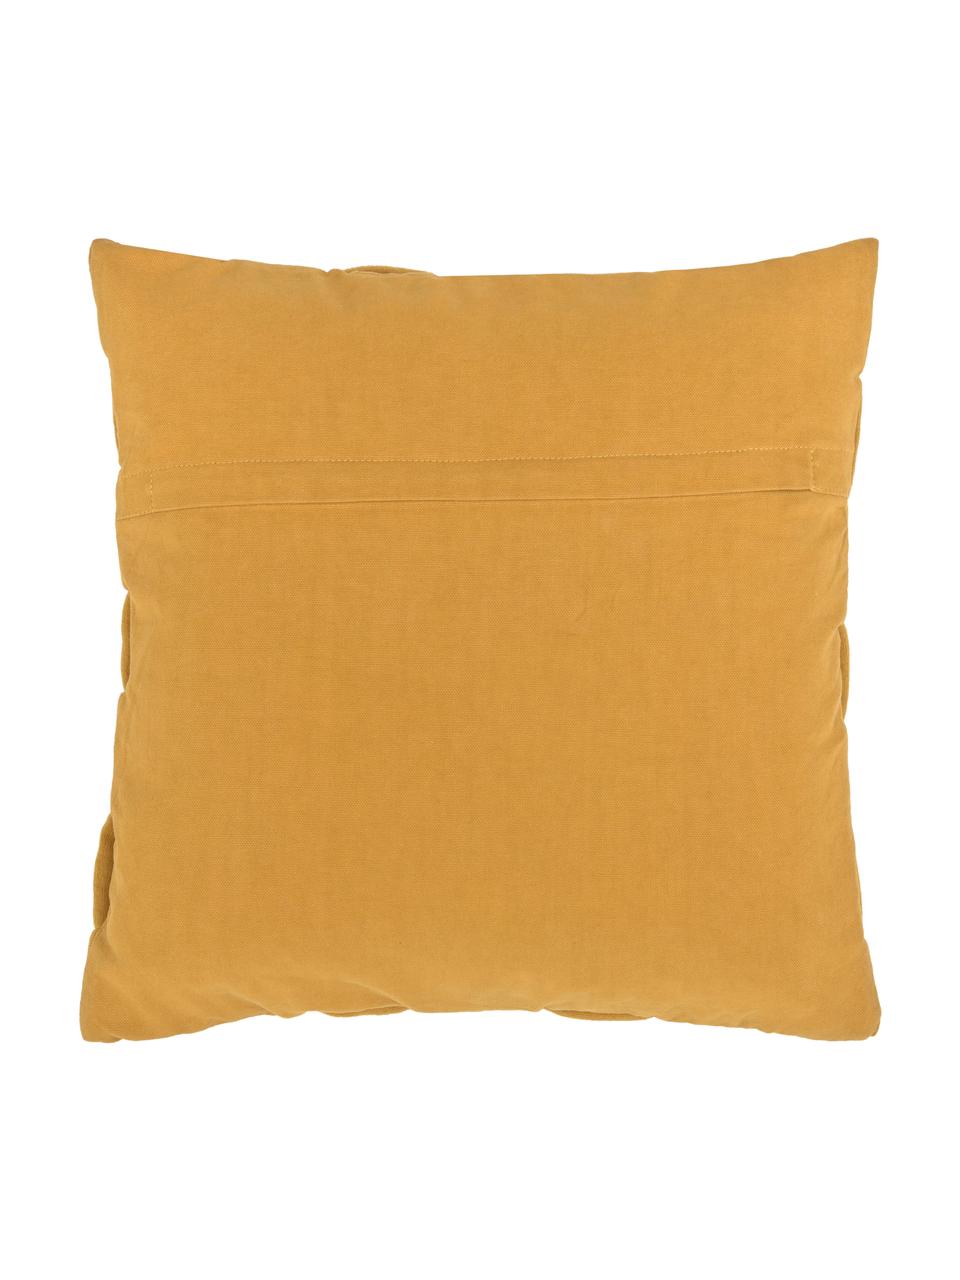 Tkaný povlak na polštář Norman, Hořčičná žlutá, Š 40 cm, D 40 cm